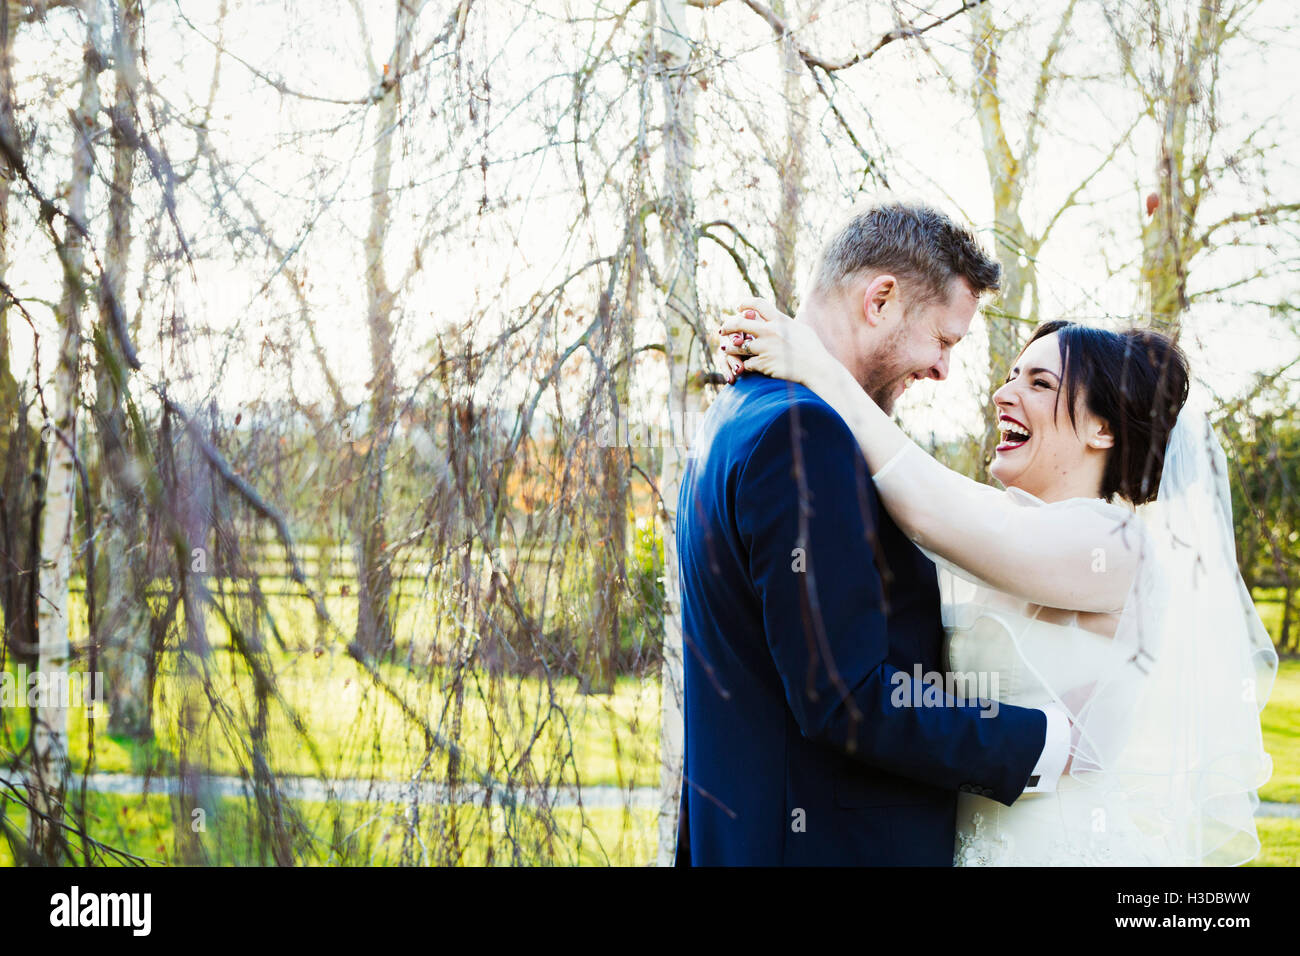 La novia y el novio en el día de su boda, riendo y abrazando. Foto de stock